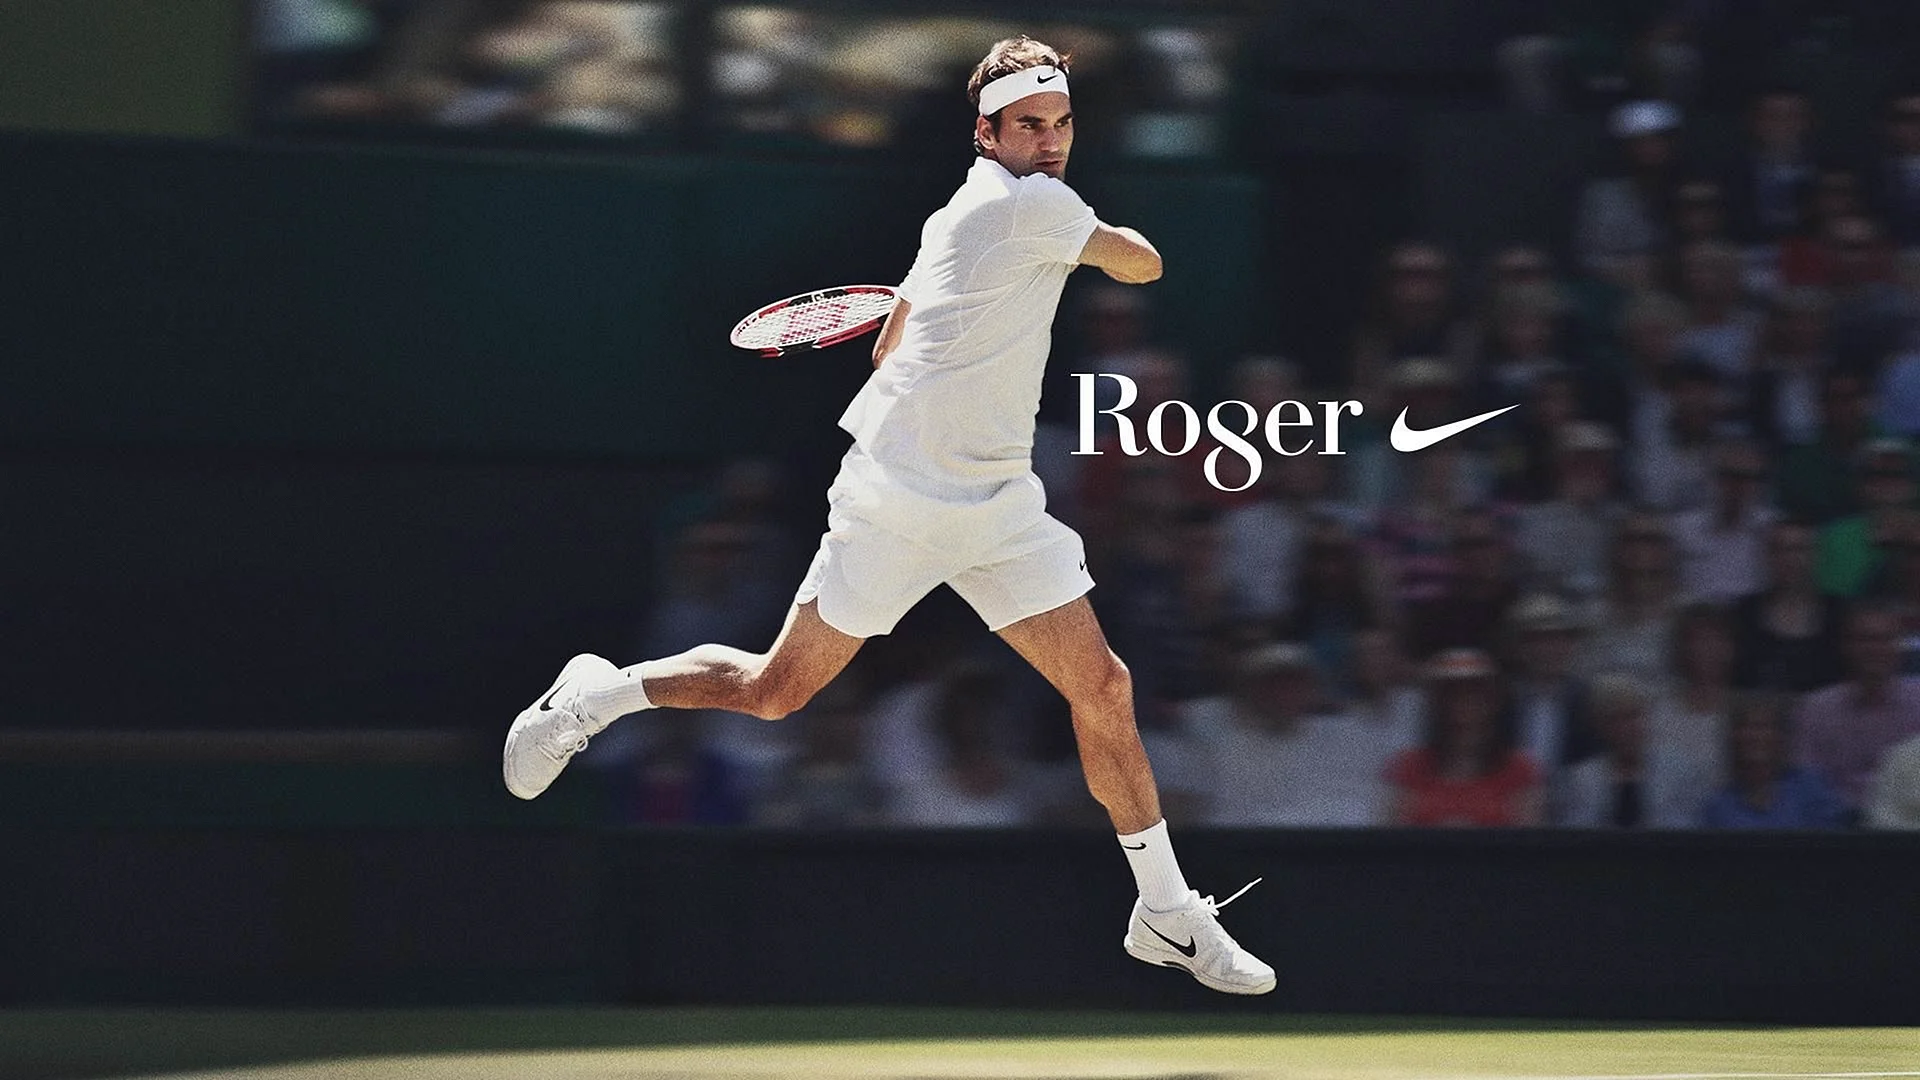 Roger Federer Poster Wallpaper